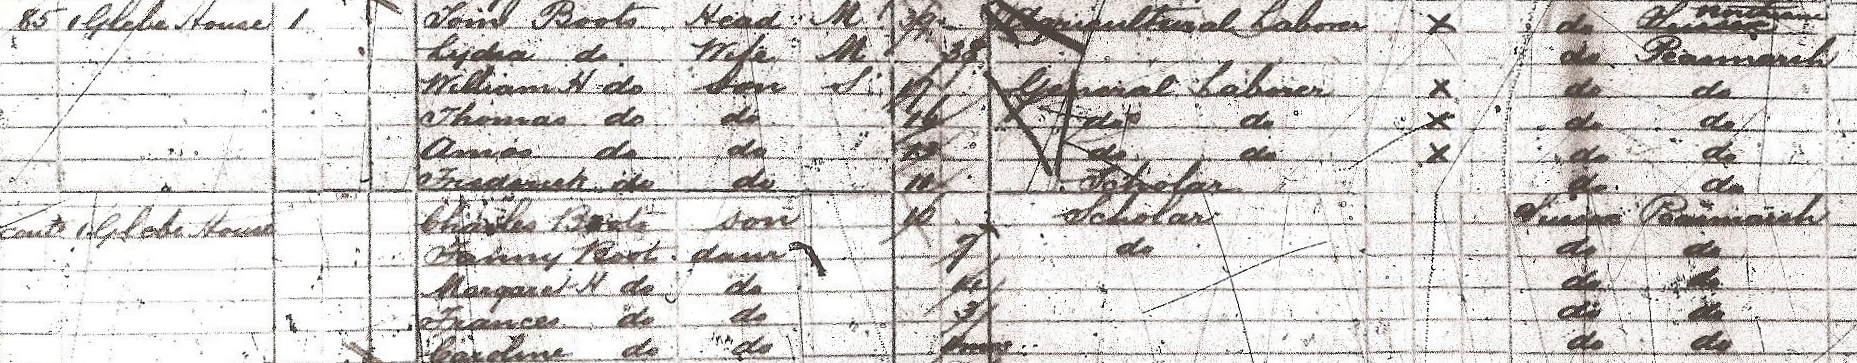 1891 census